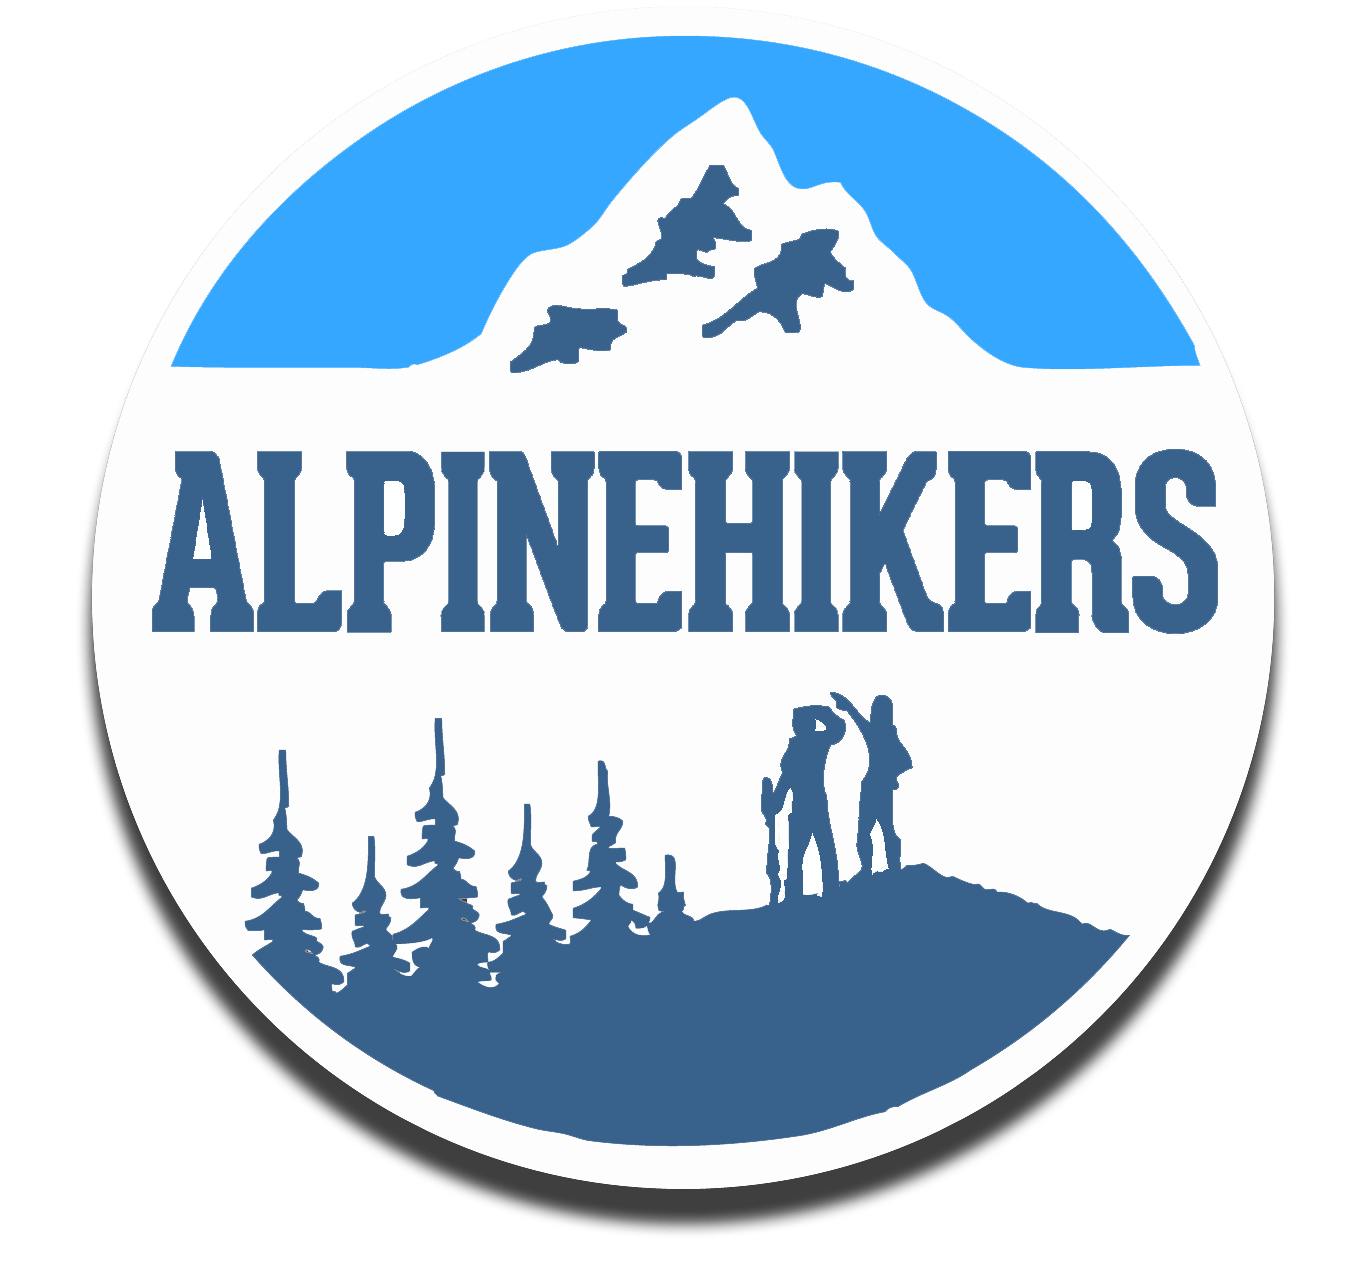 Hiking Logo - Alpinehikers. Alpinehikers Hiking Tours in Switzerland